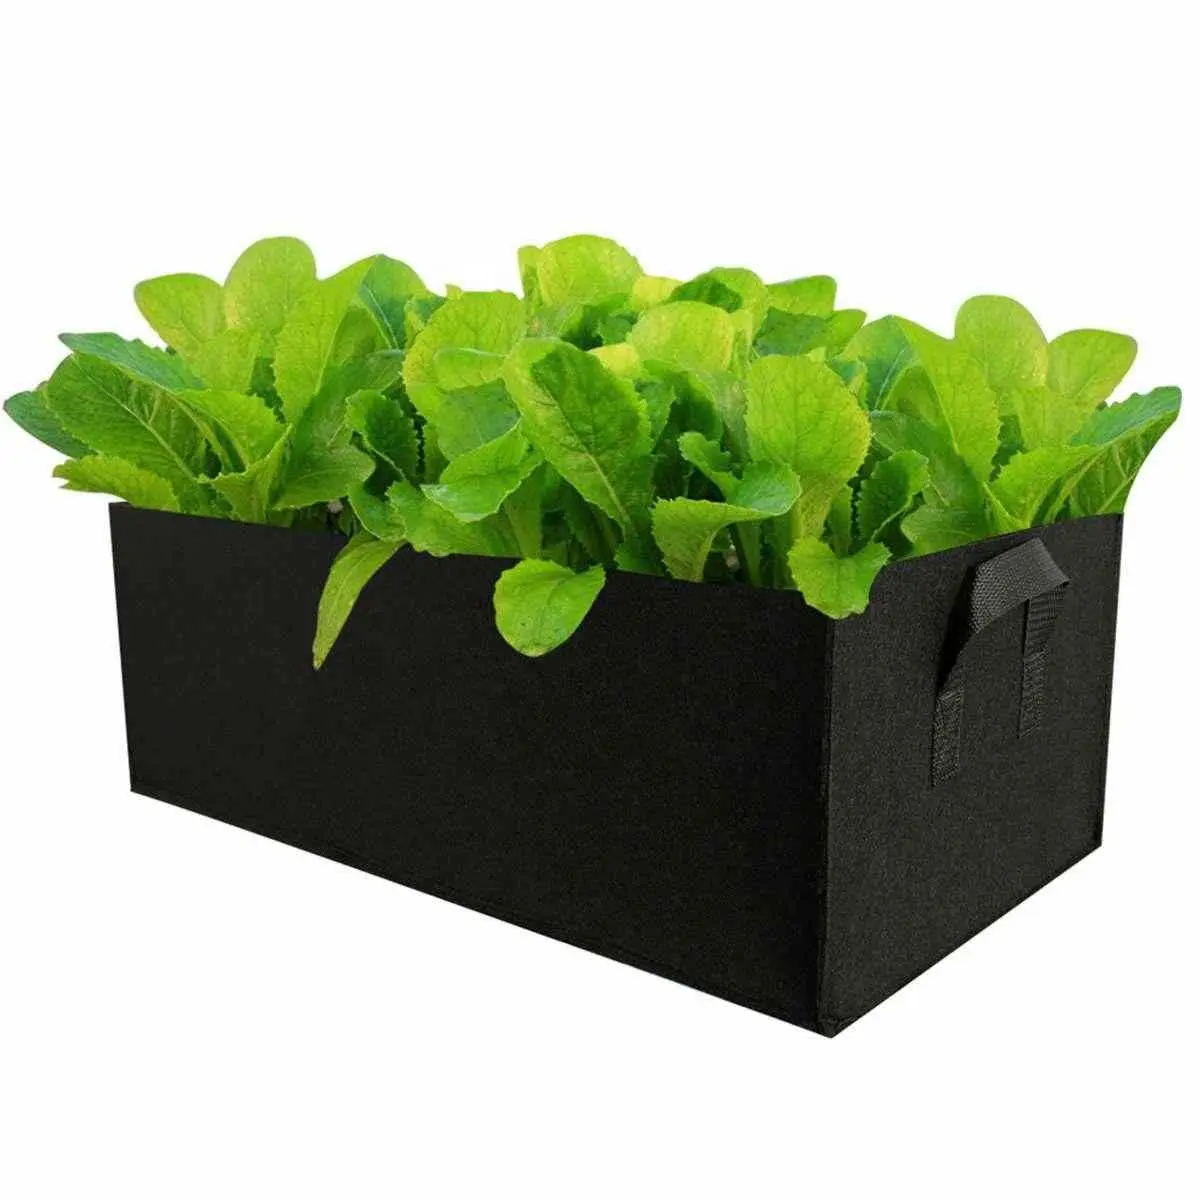 Plant Grow Bag Diy Aardappel Groente Groeien Planter Milieuvriendelijke Niet-geweven Stof Tomaat Planten Container Bag Tuin Pot